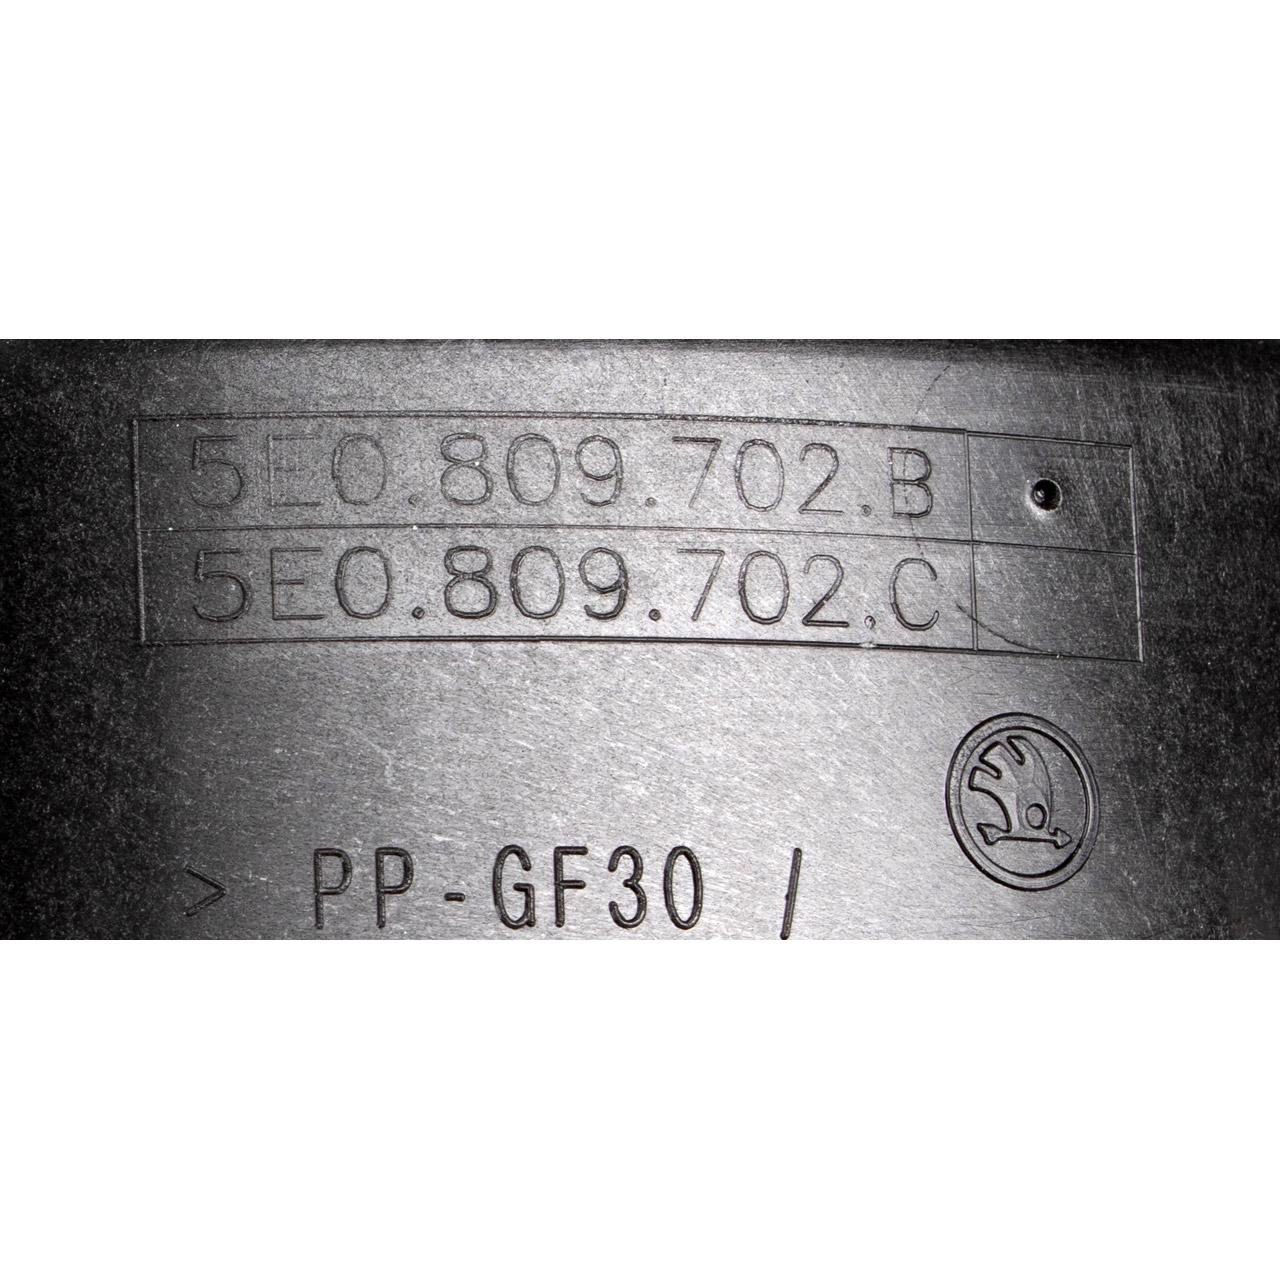 Tankdeckel Tankverschluss Verschlussdeckel Tank für SKODA Octavia 3 5E0809702B